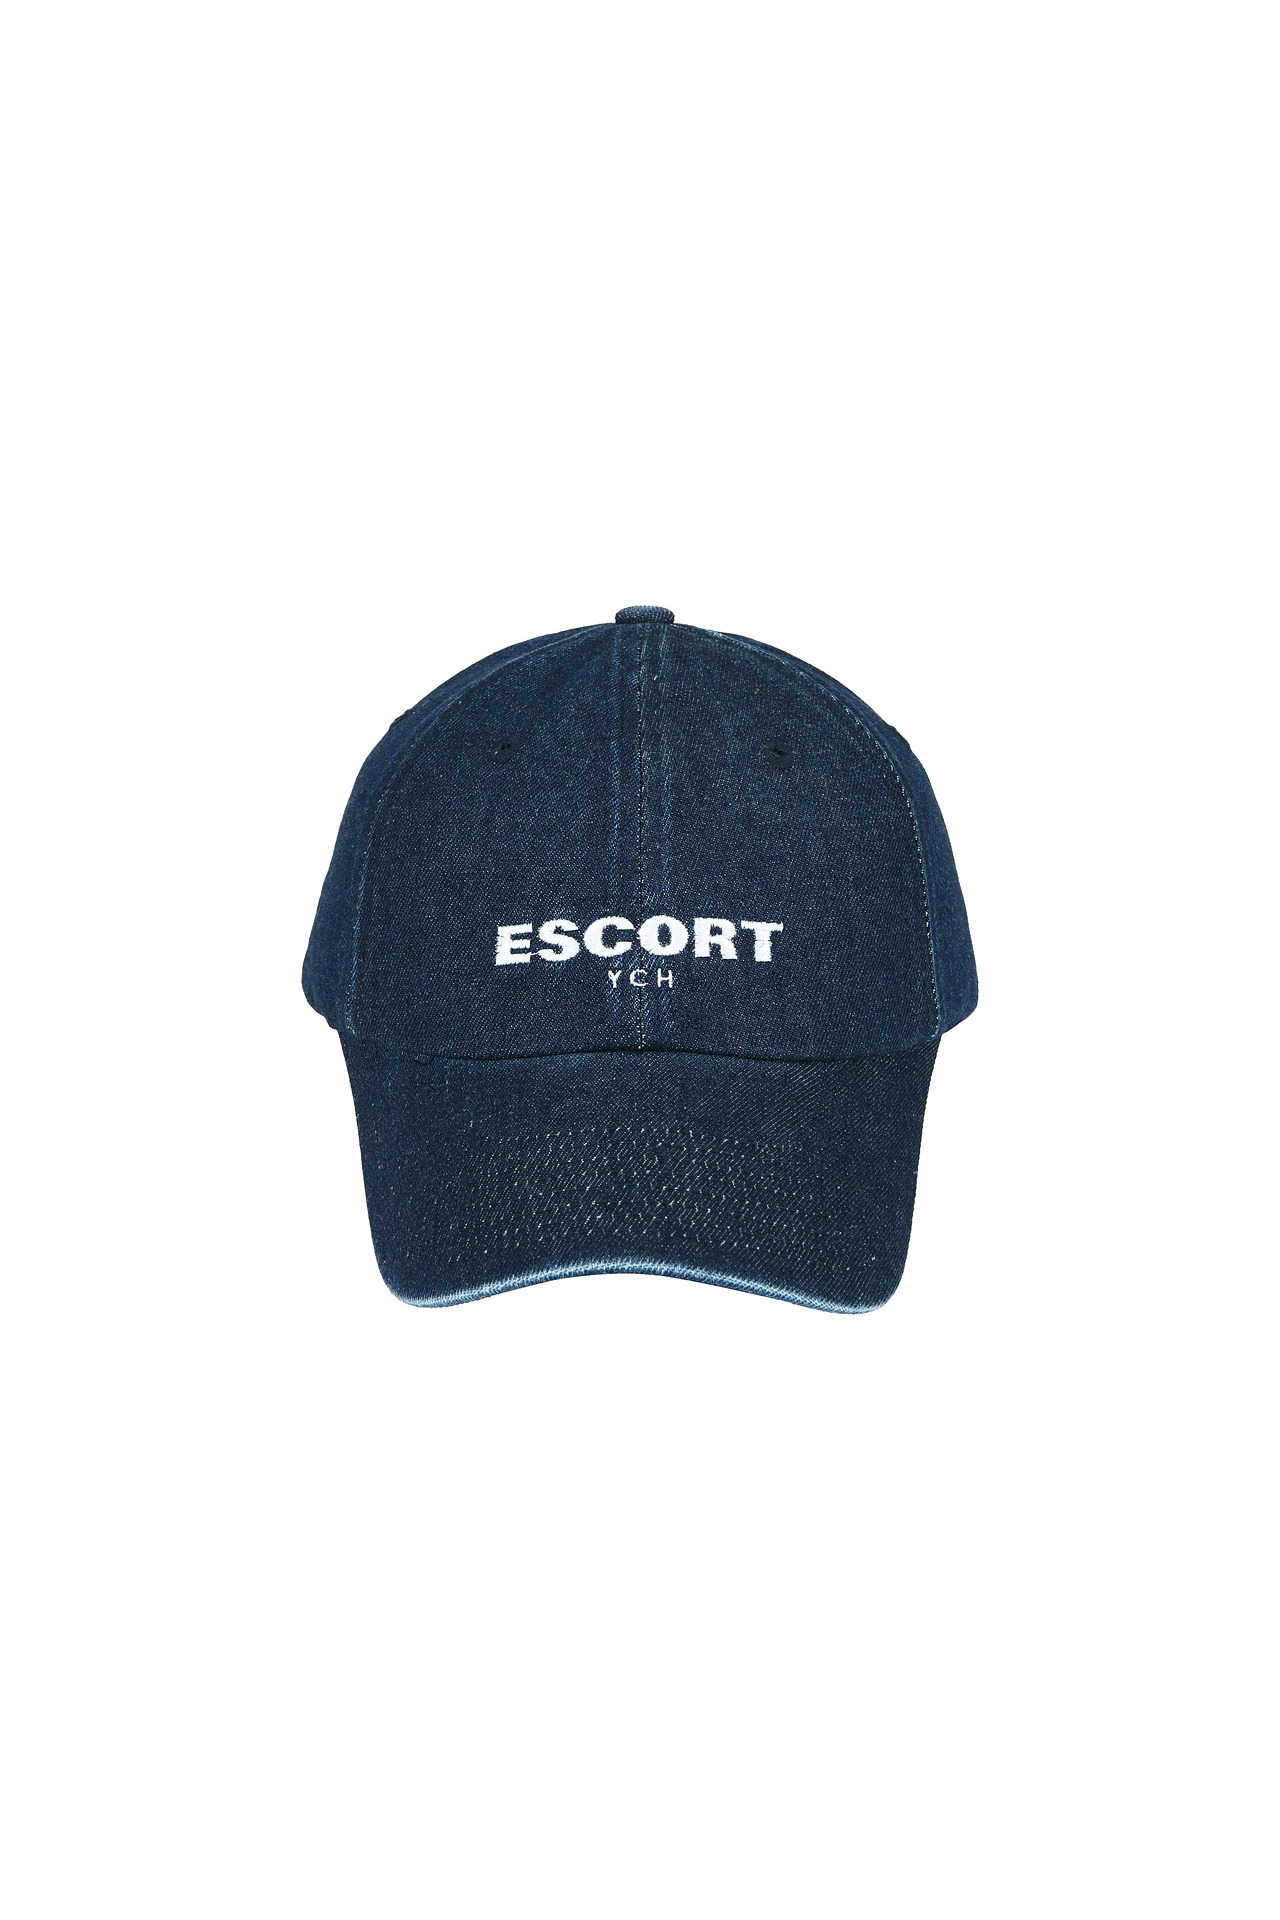 ESCORT-PRINT BASEBALL CAP